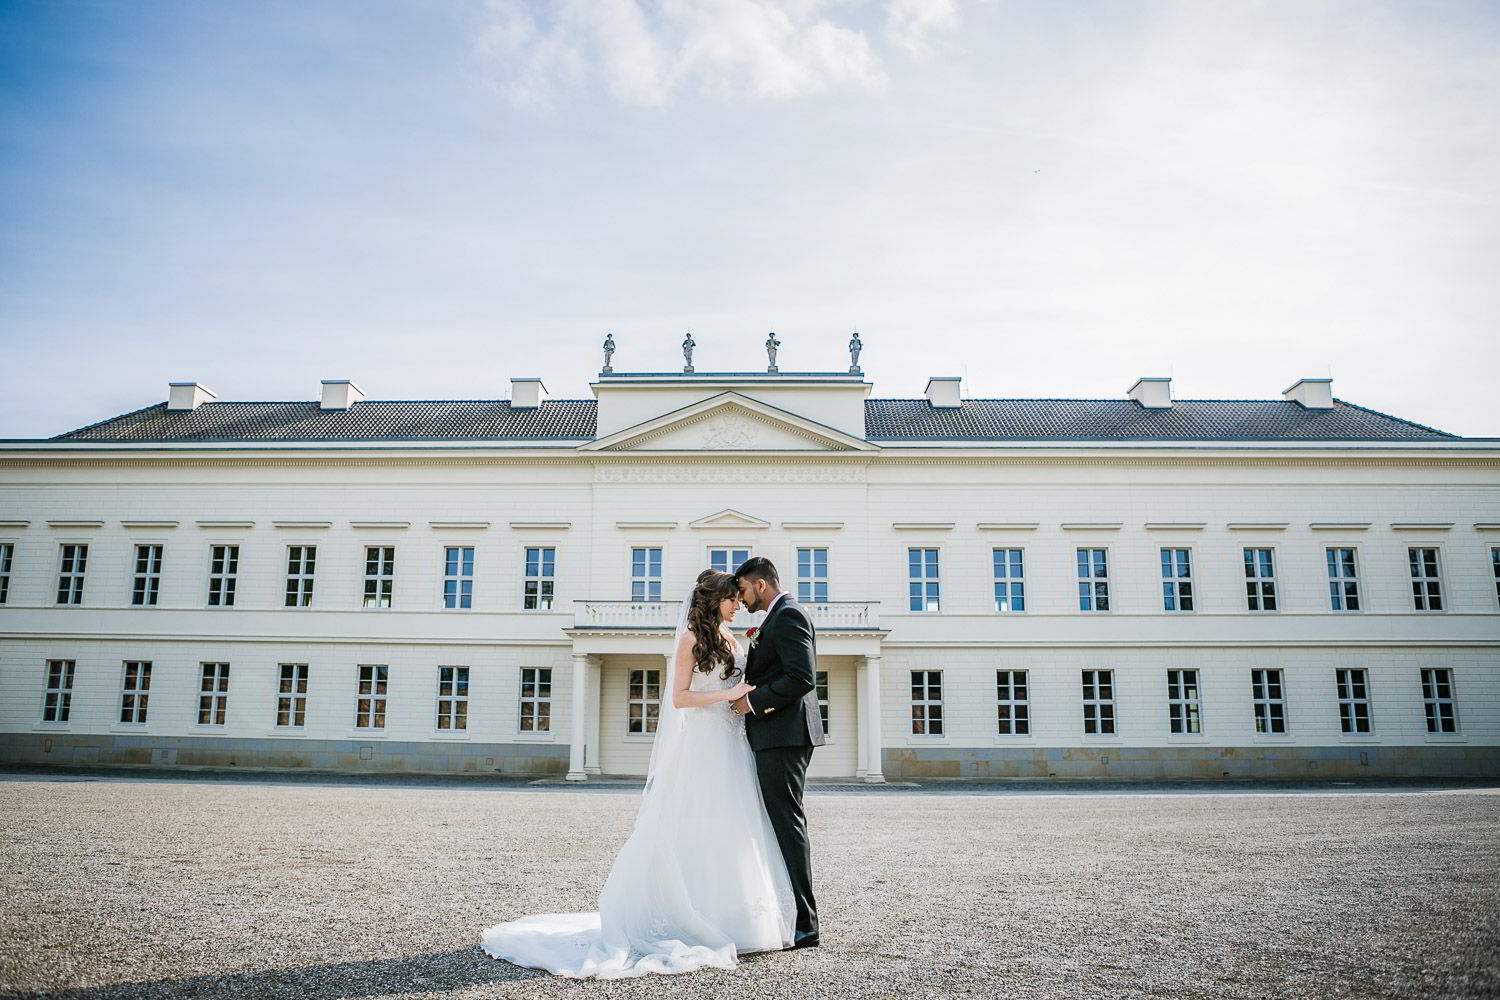 Brautpaar vor dem Eingang in Herrenhäuser Gärten Hannover